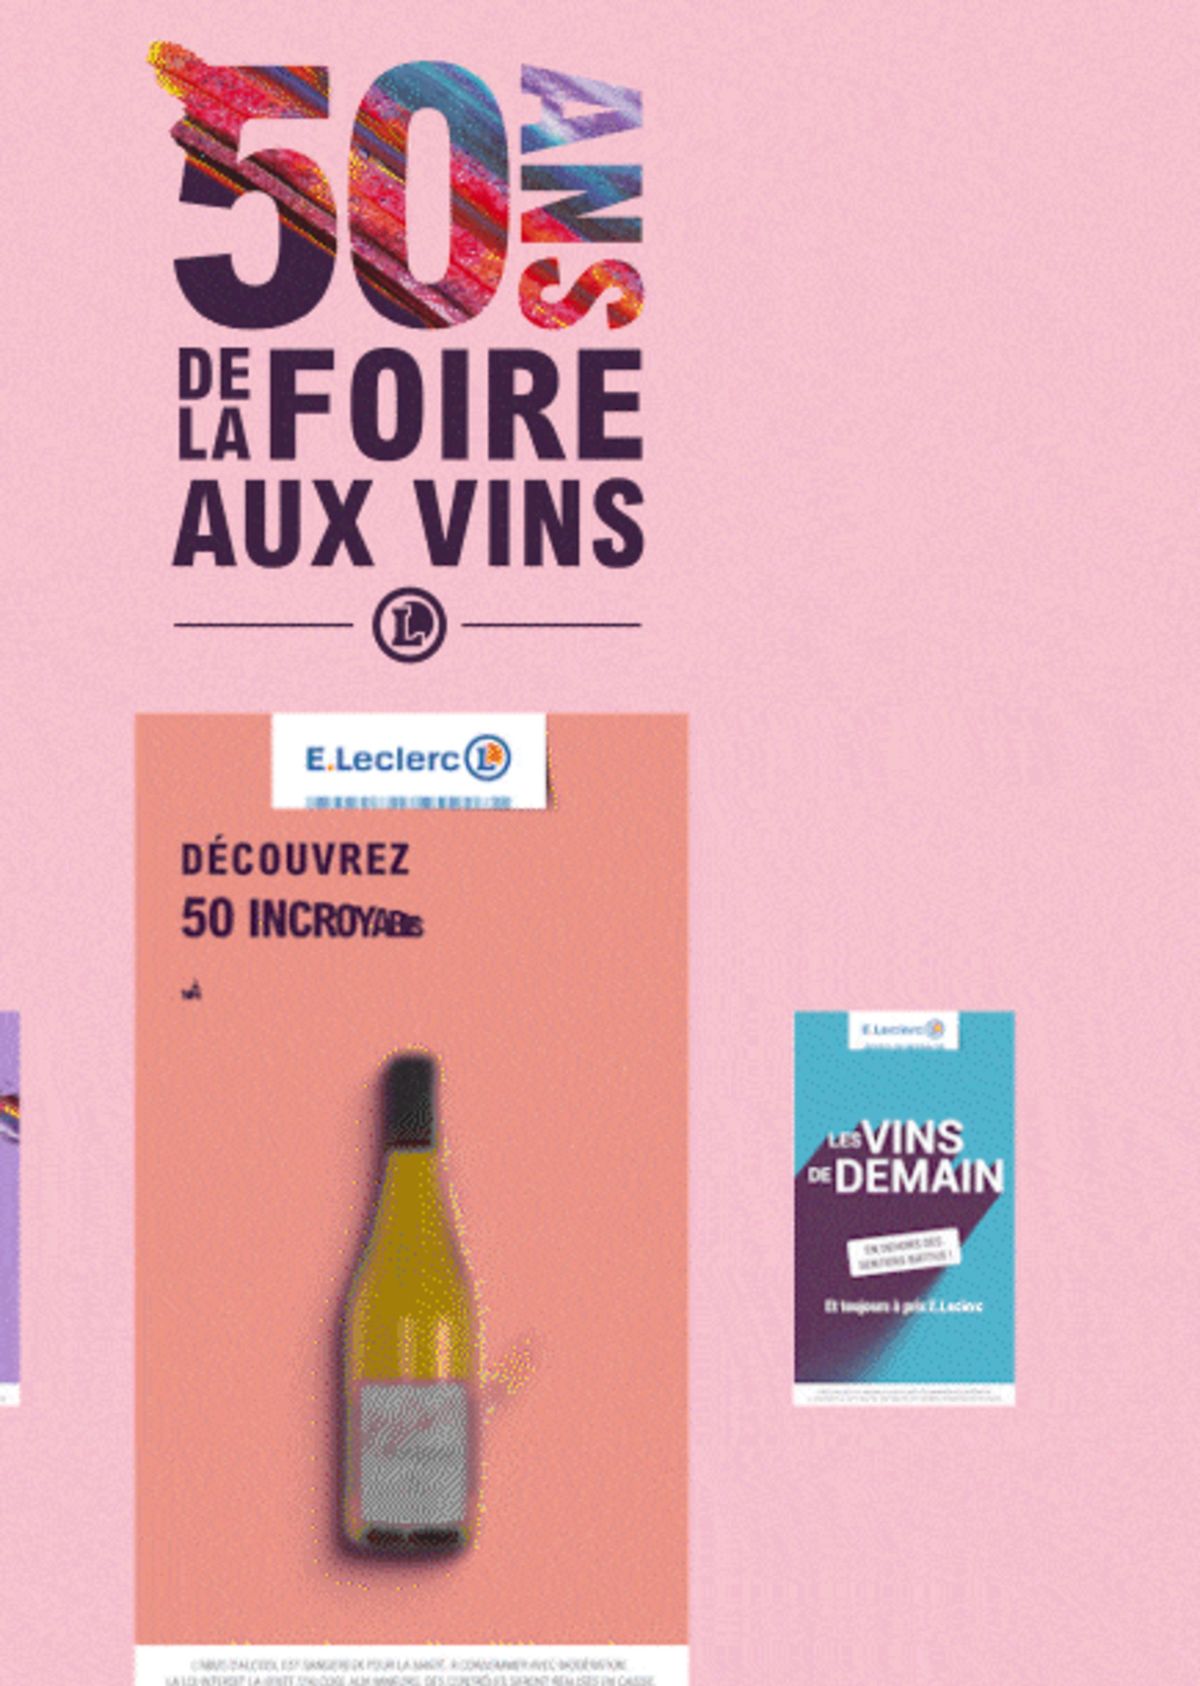 Catalogue Foire Aux Vins - Mixte, page 00739